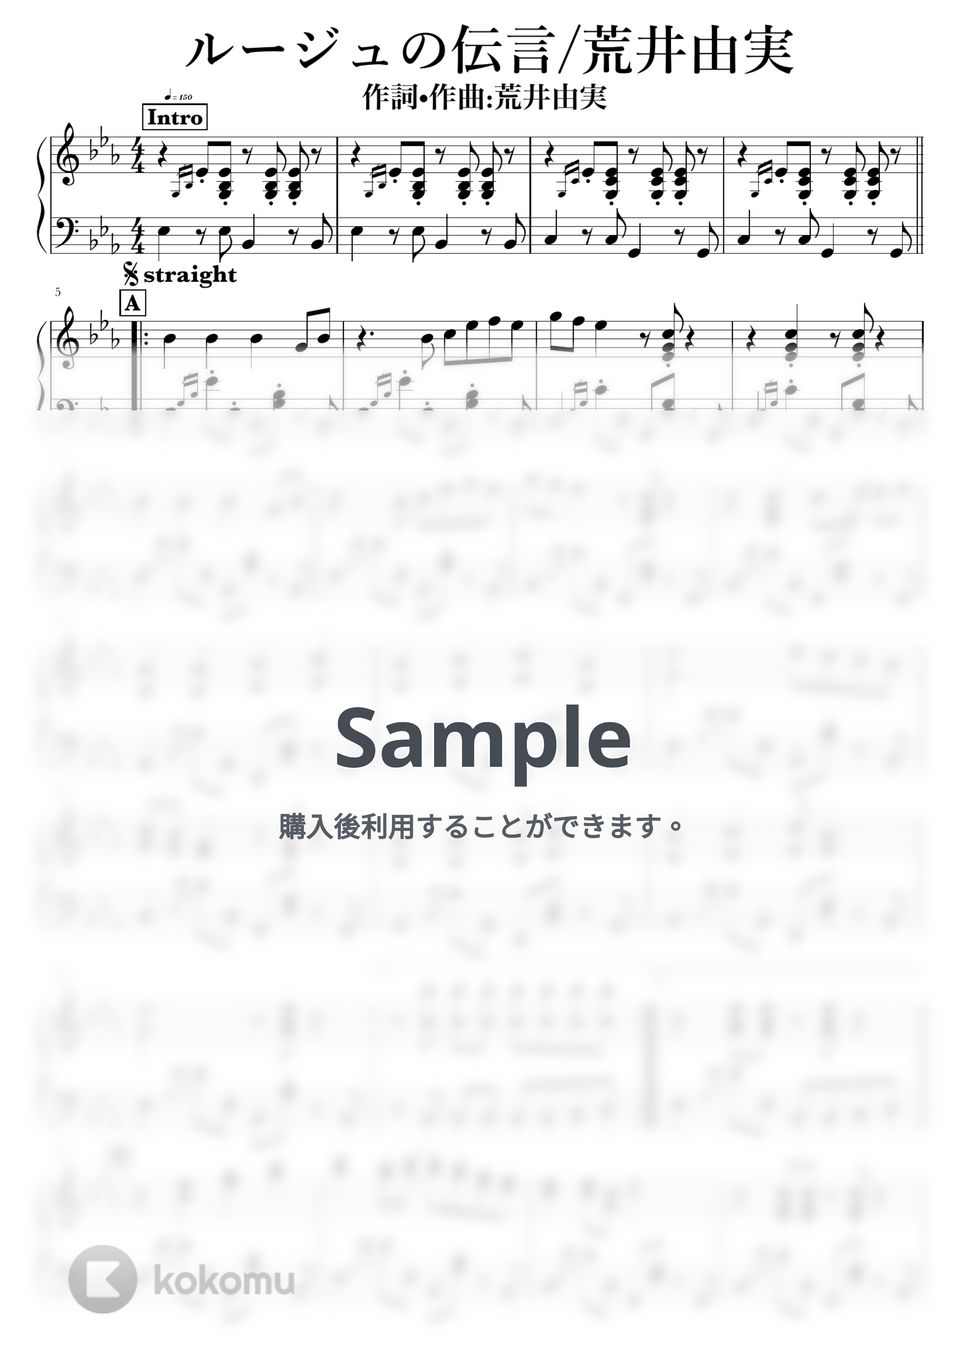 荒井由美 - ルージュの伝言 by NOTES music